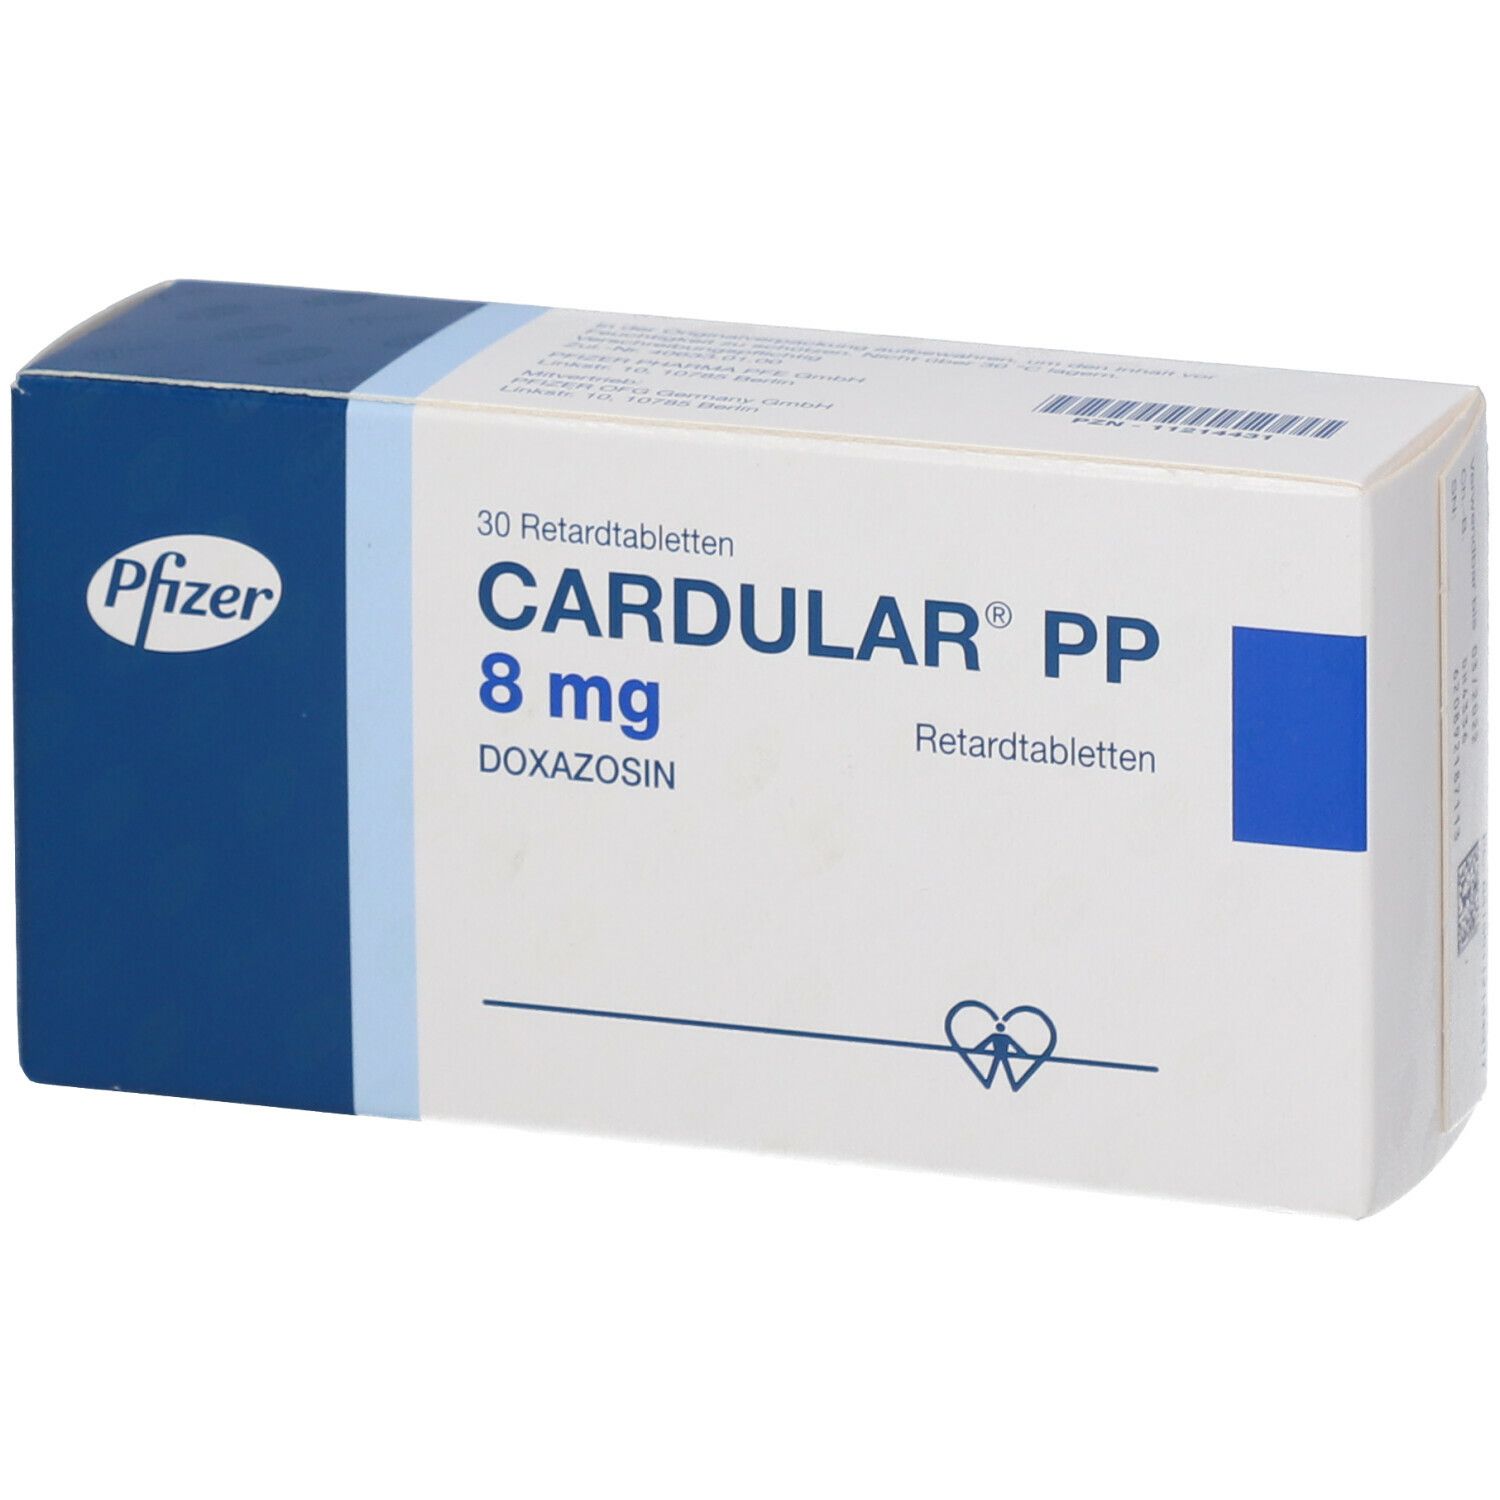 CARDULAR PP 8 mg Retardtabletten